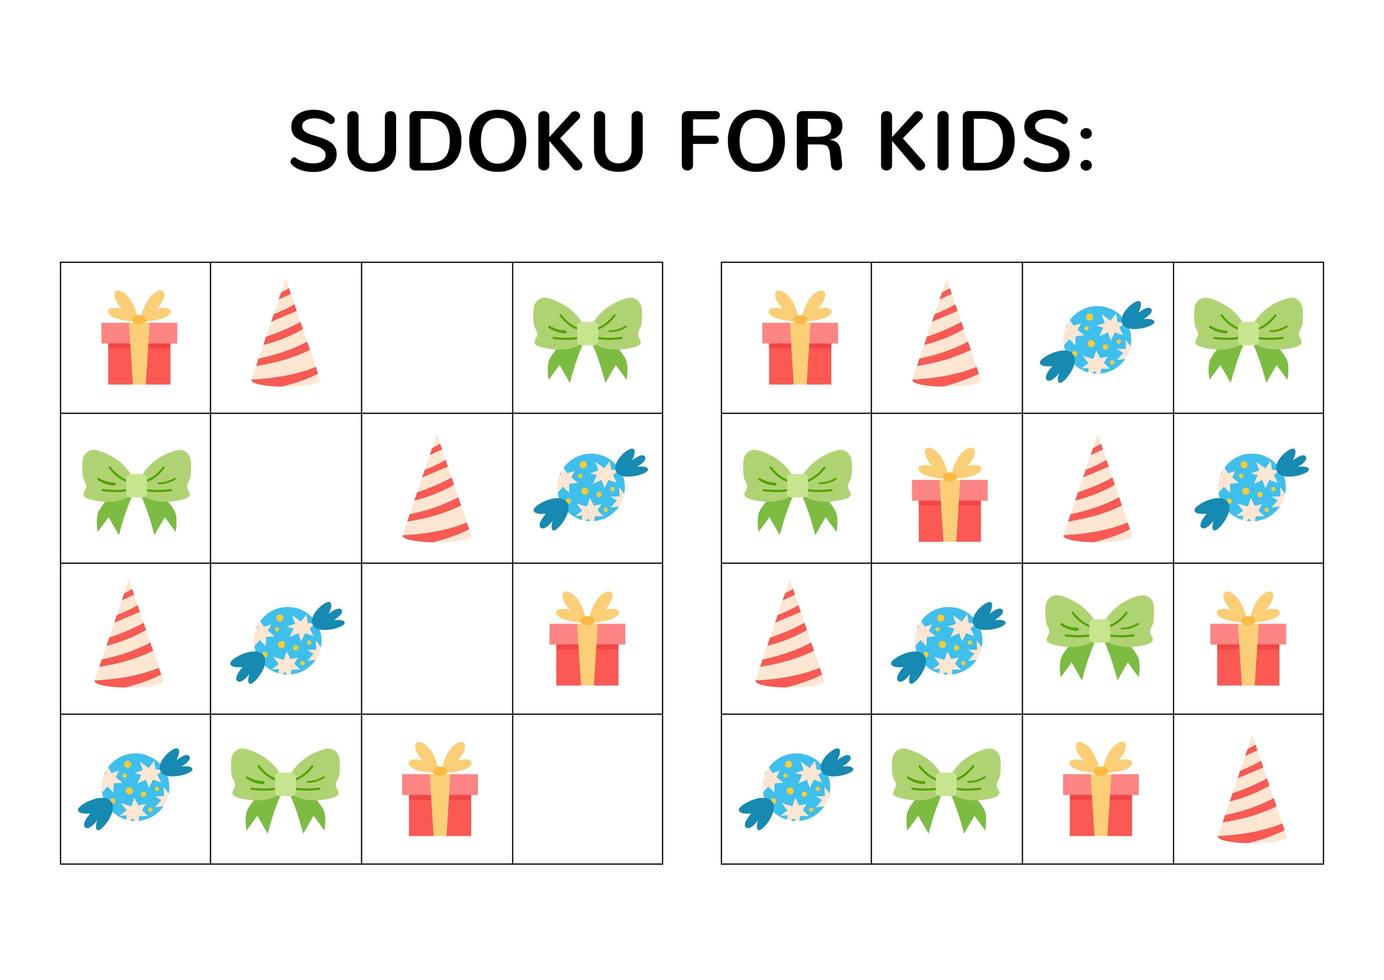 jeu de sudoku pour les enfants avec des images mignonnes. vecteur